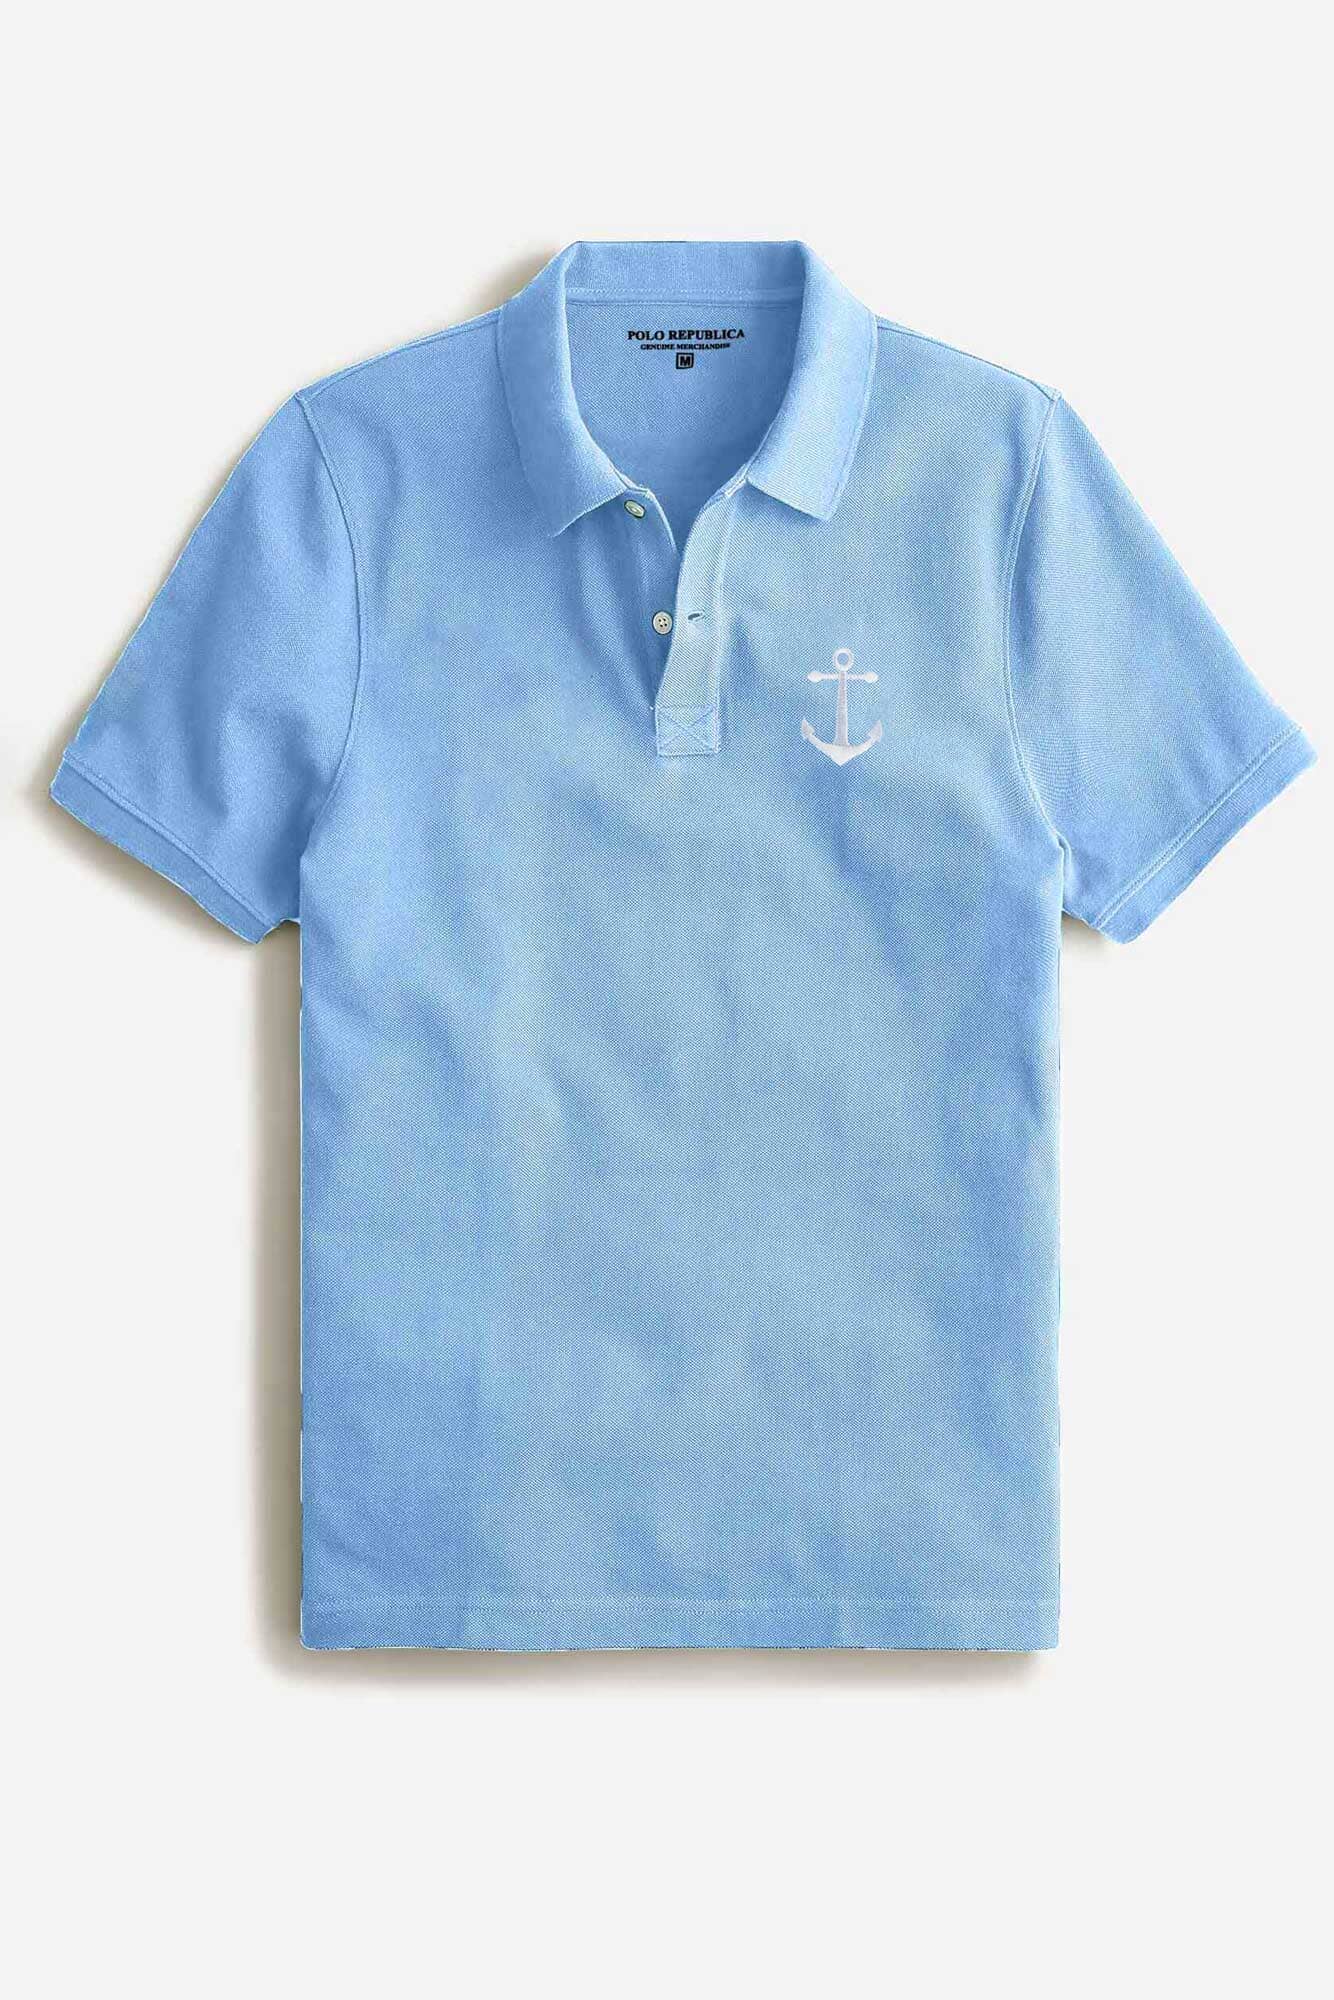 Polo Republica Men's Anchor Embroidered Short Sleeve Polo Shirt Men's Polo Shirt Polo Republica 